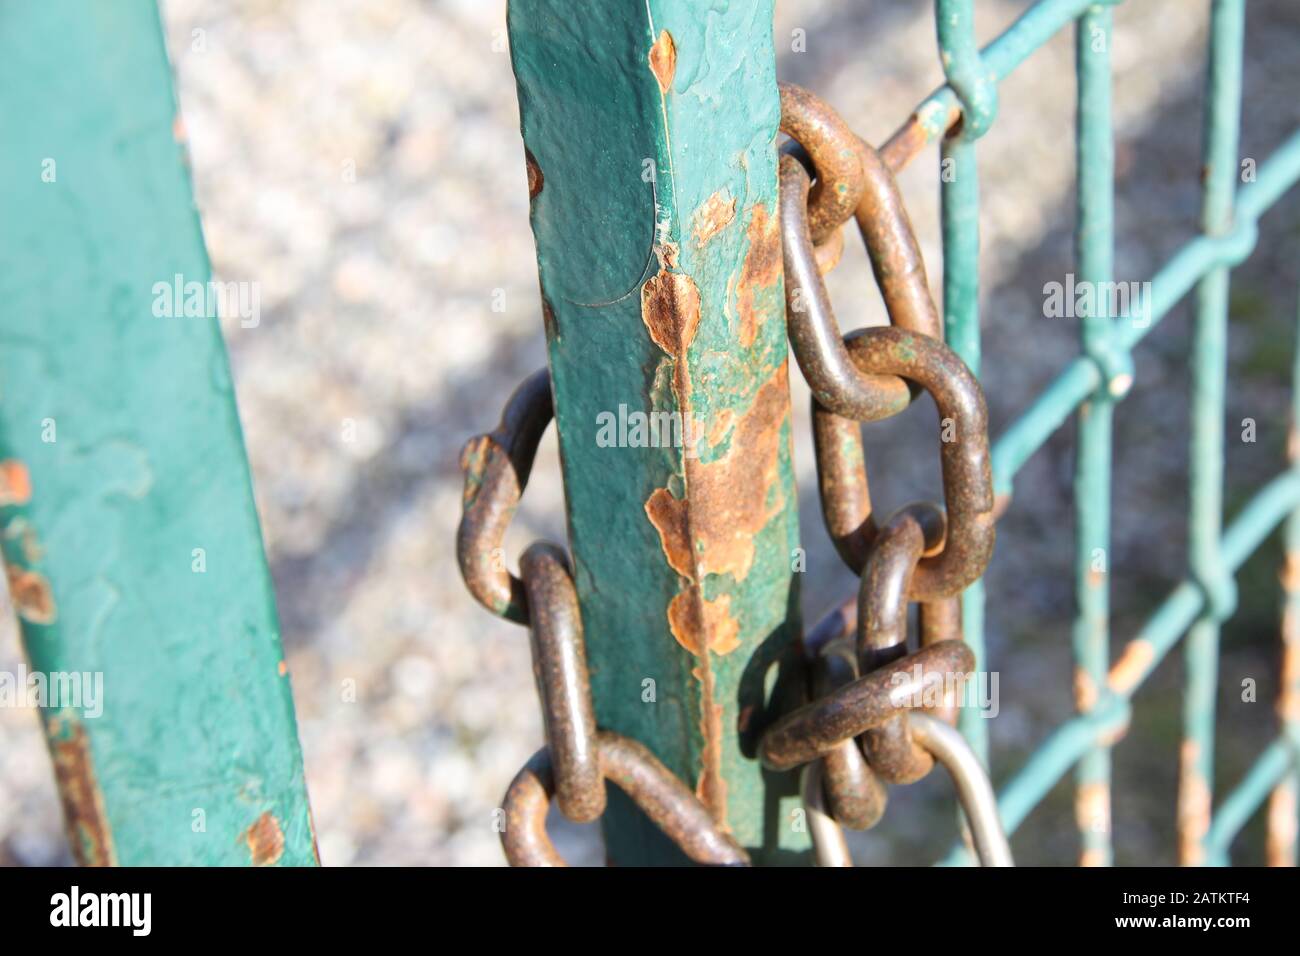 La chaîne avec un cadenas verrouille la porte métallique rouillée. Banque D'Images